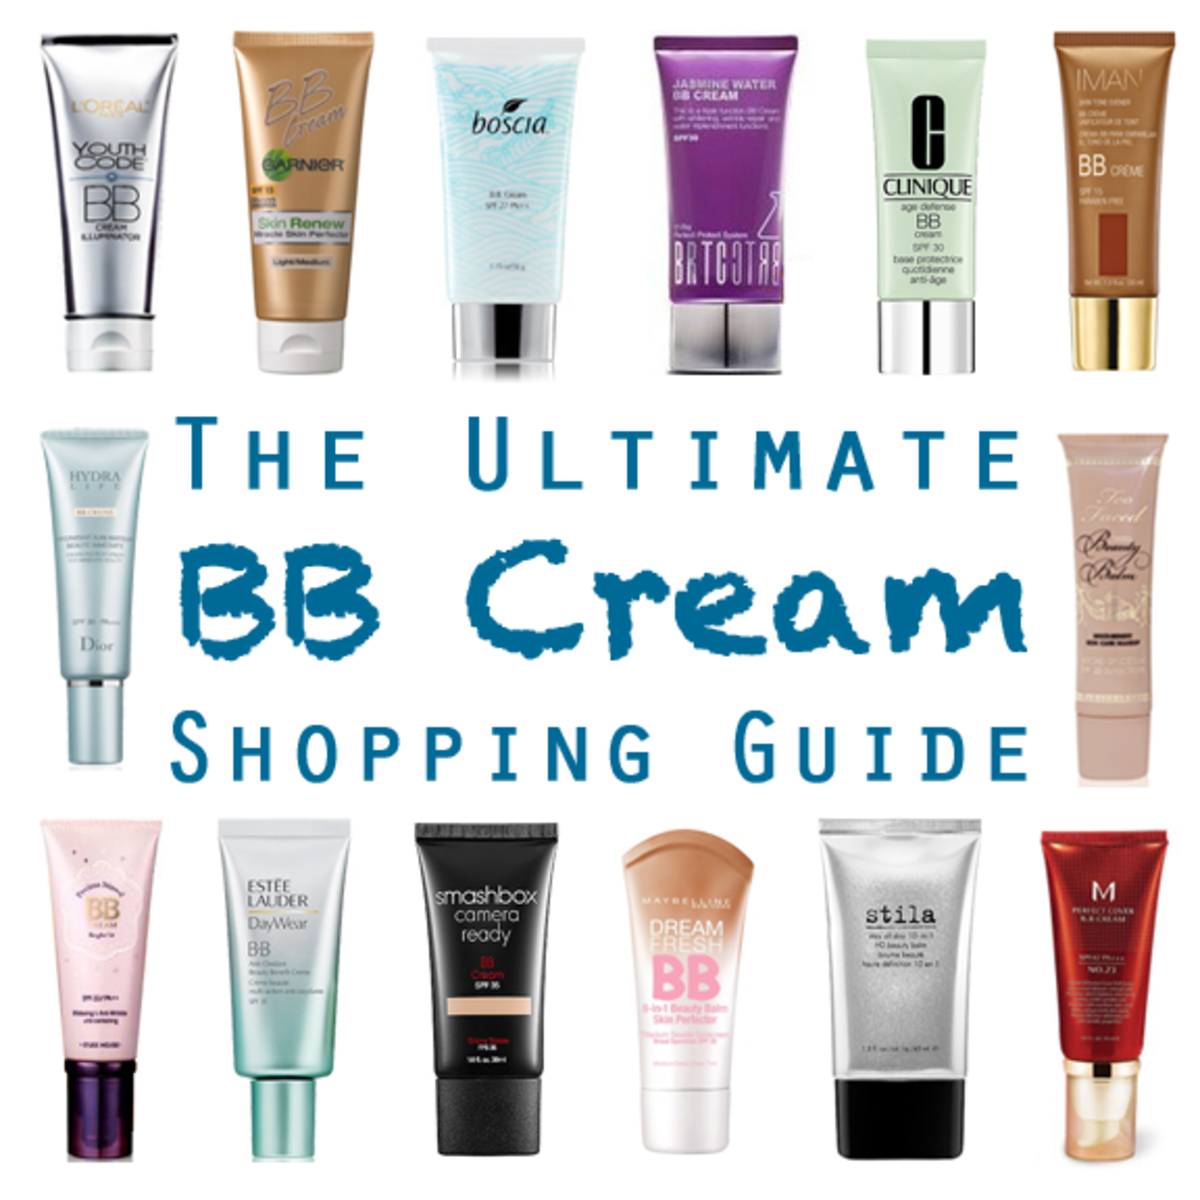 The 7 Best BB and CC Creams | Makeup.com